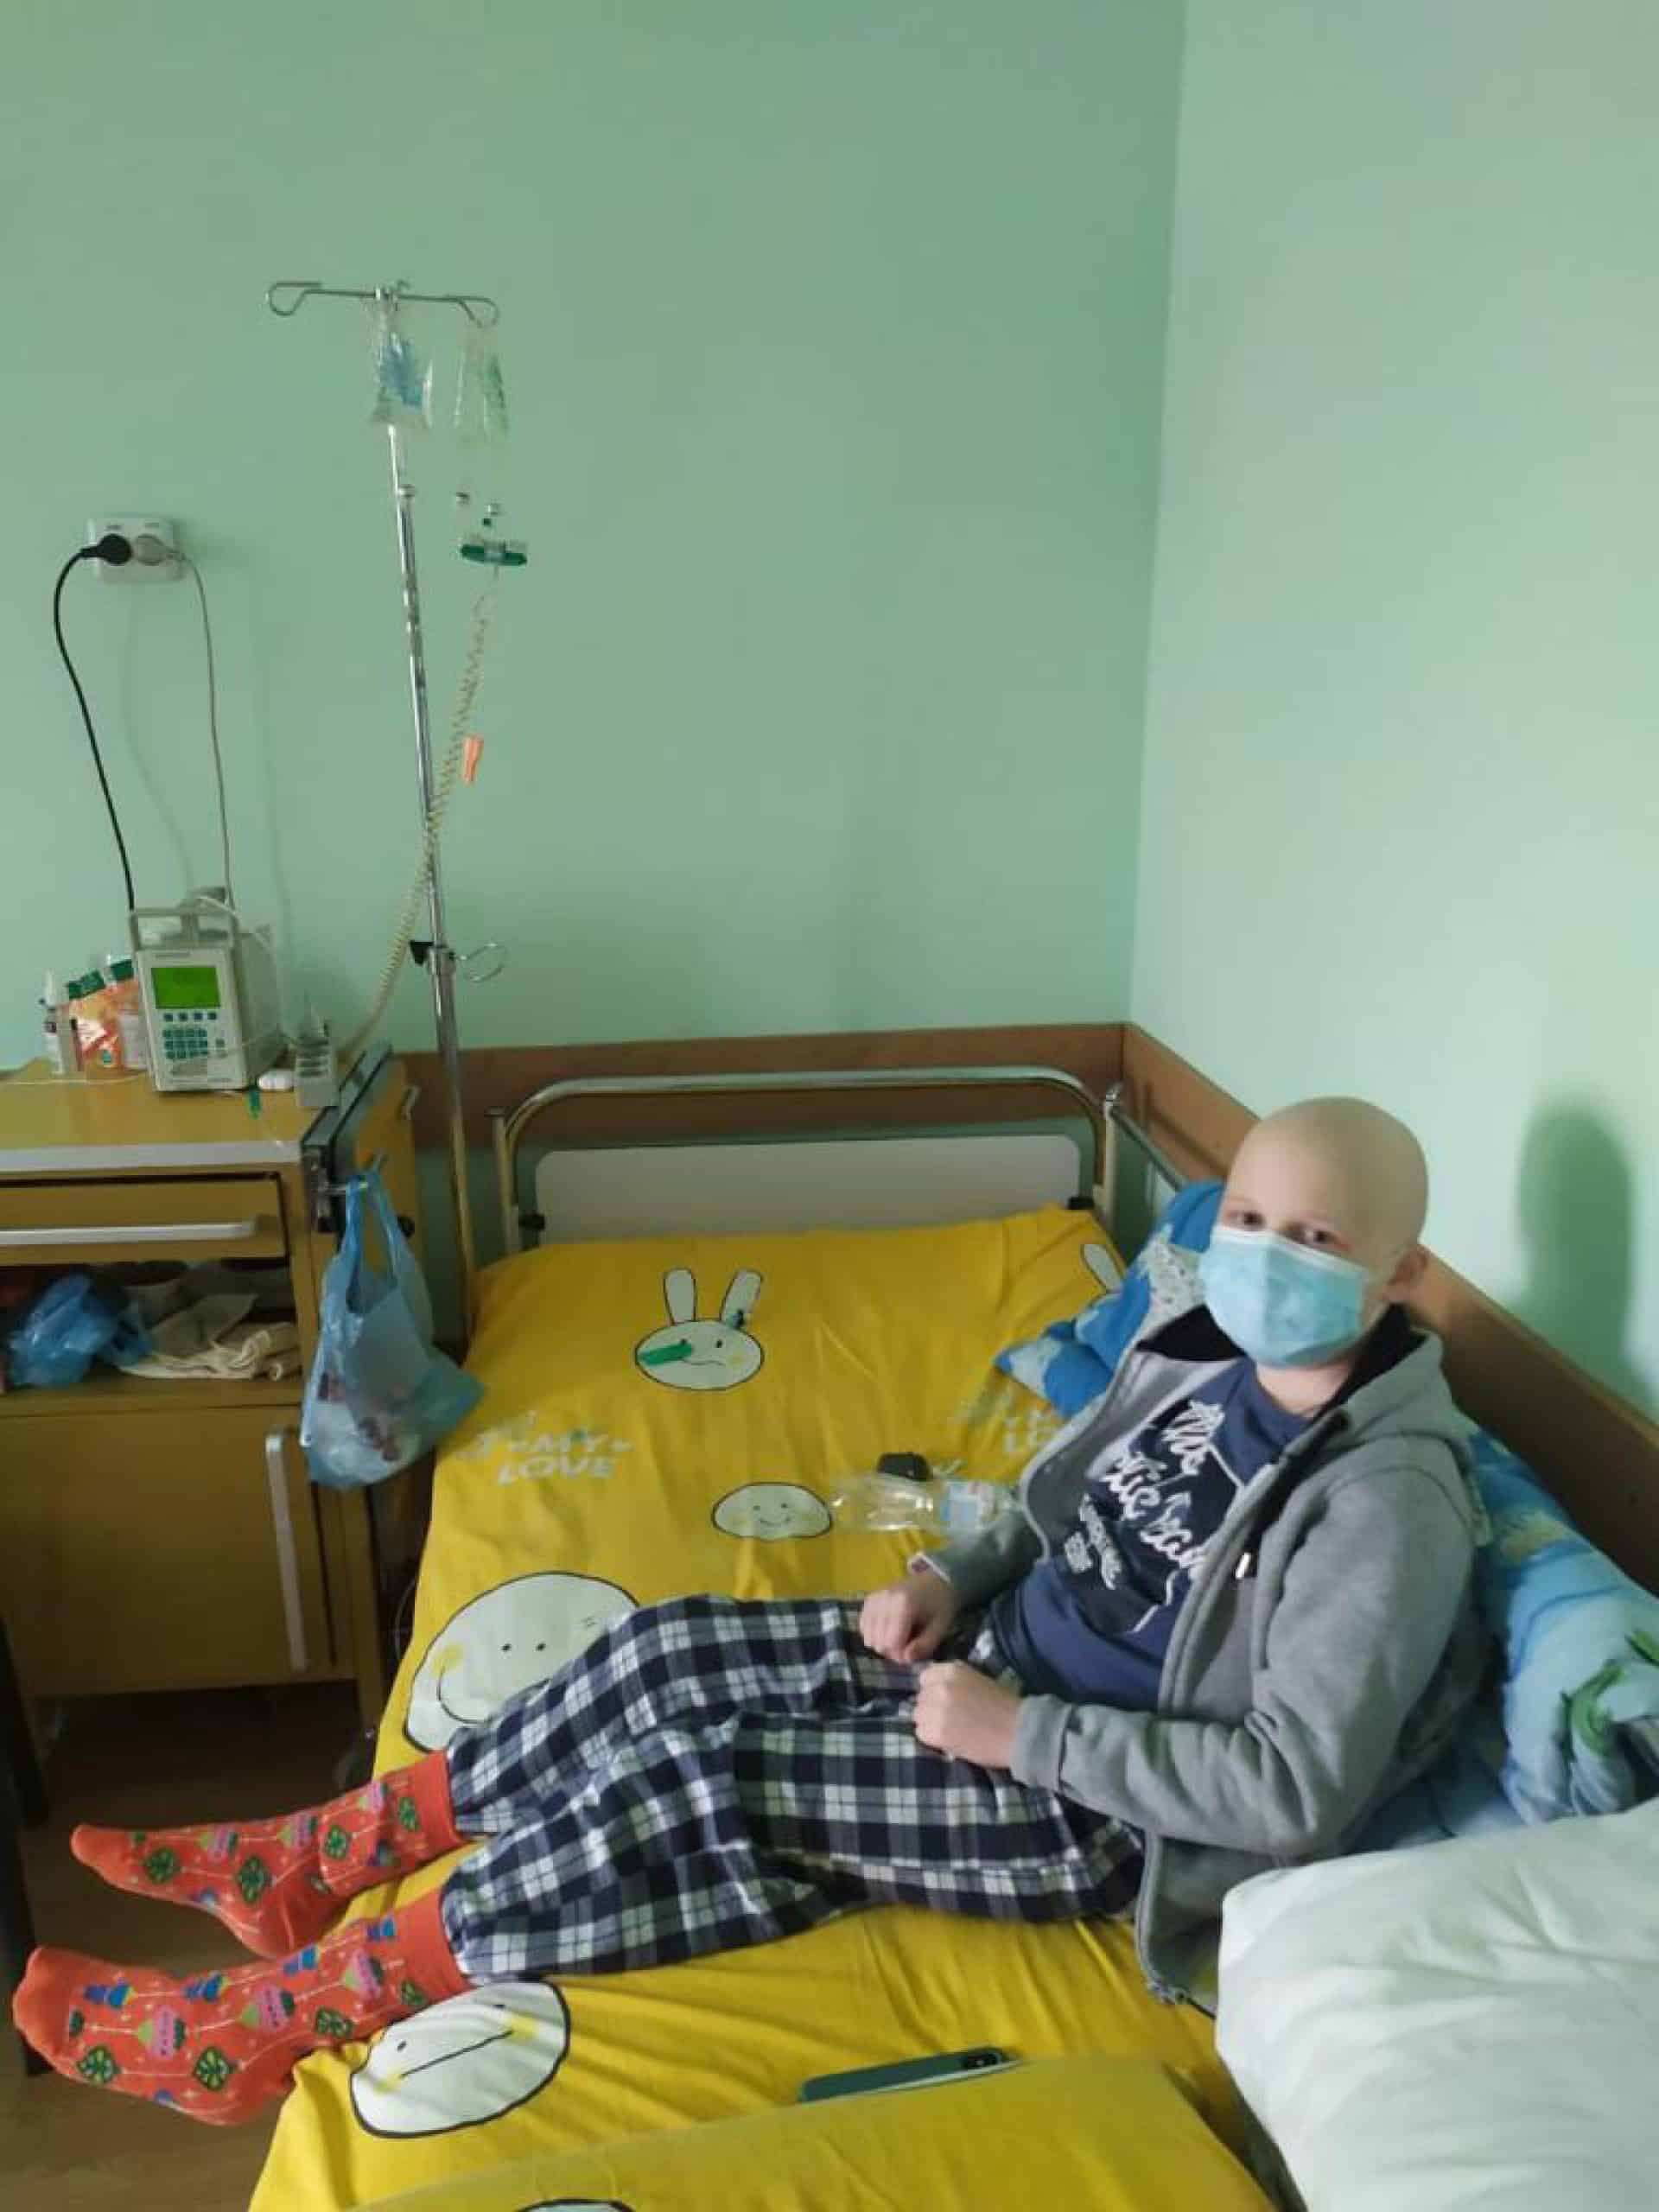  Una signora di 85 anni, residente nel Bassanese, ha deciso di lasciare la sua eredità per le cure dei bimbi affetti da leucemia